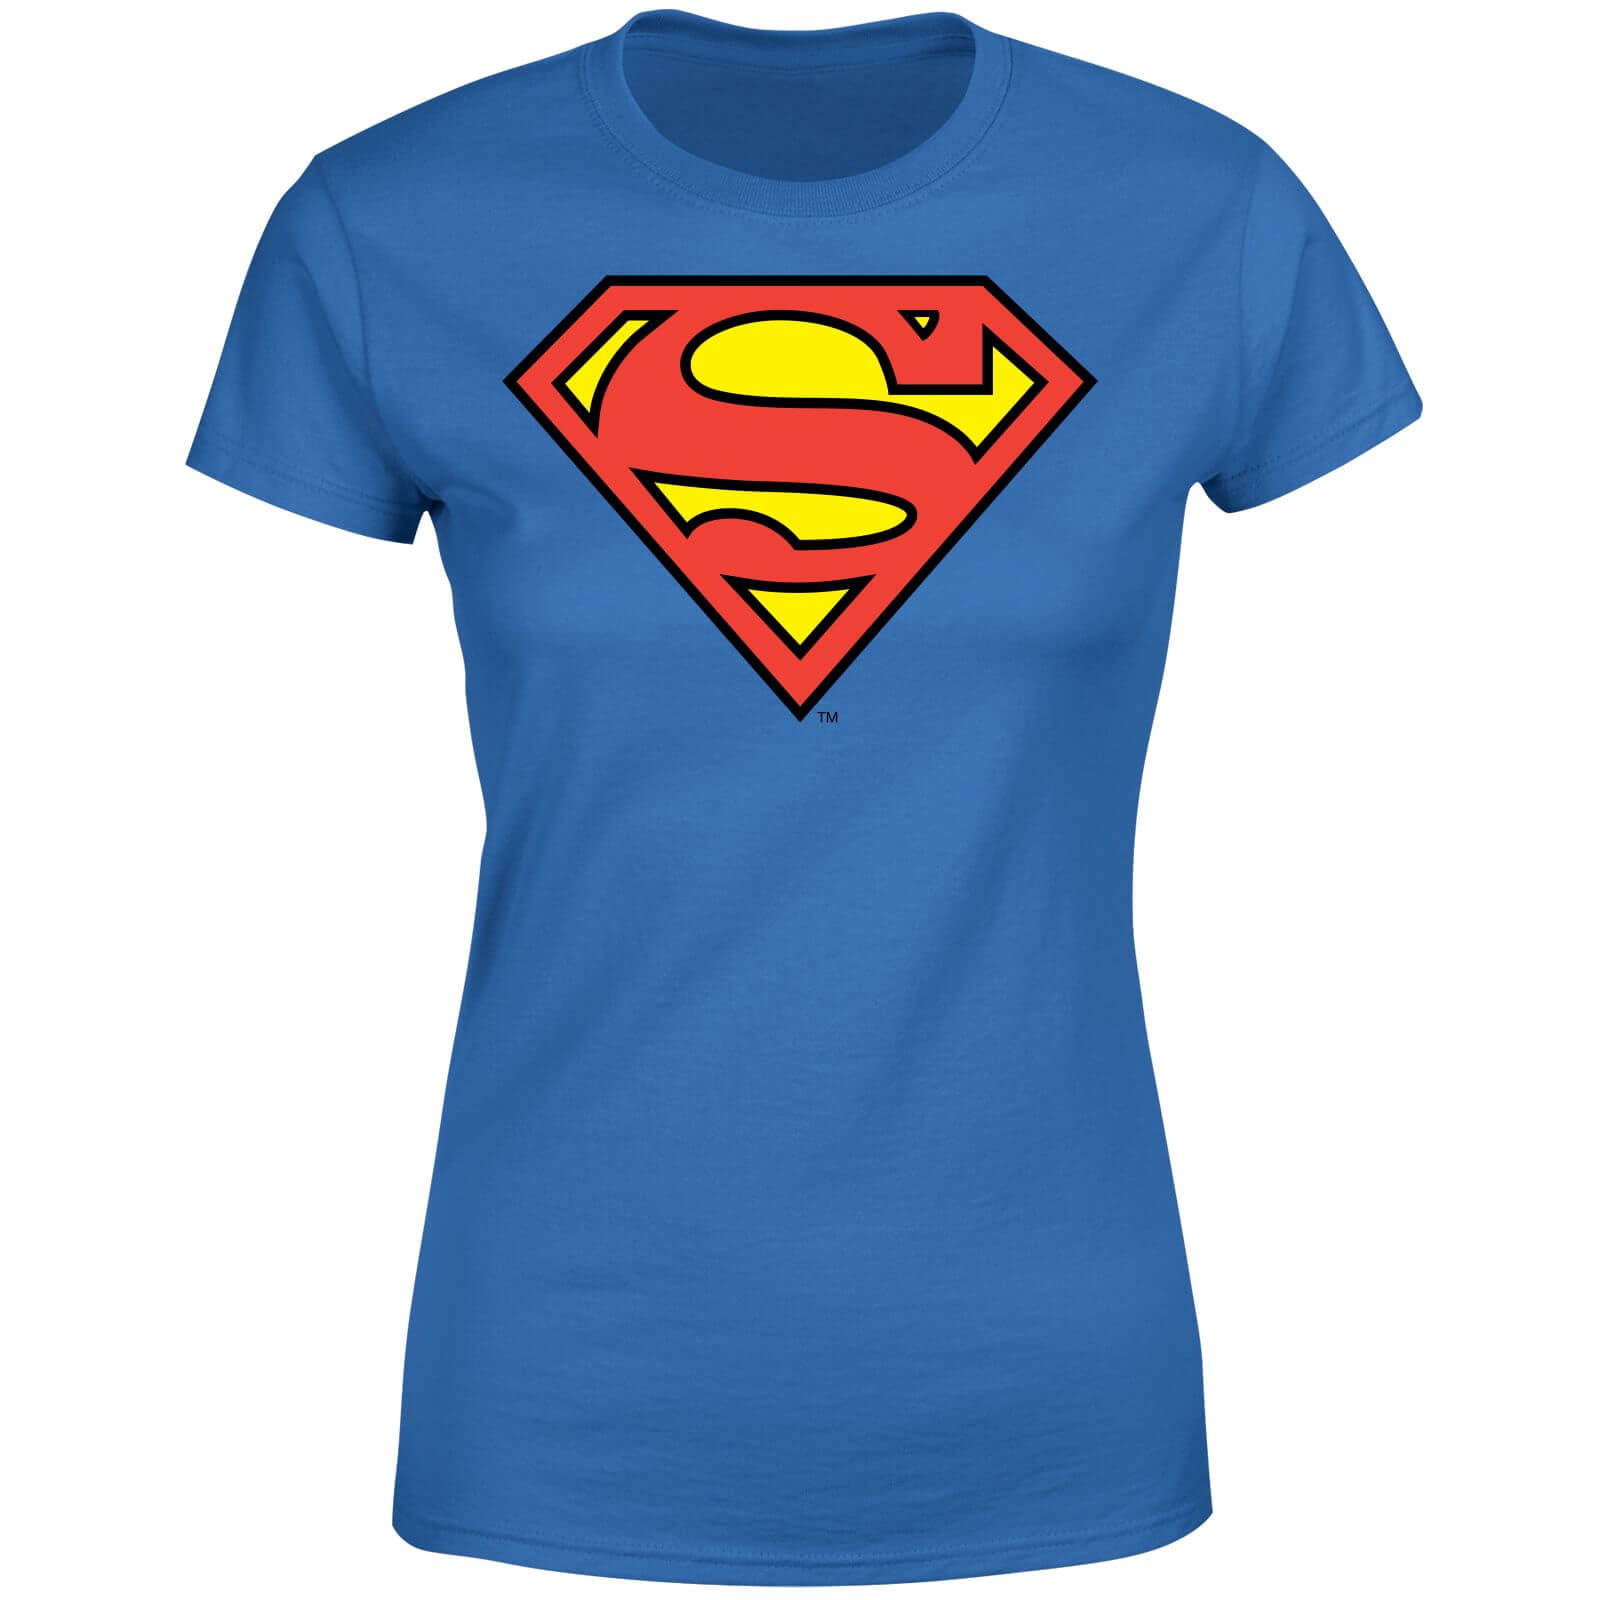 DC Originals Official Superman Shield Women's T-Shirt - Royal Blue - M - royal blue